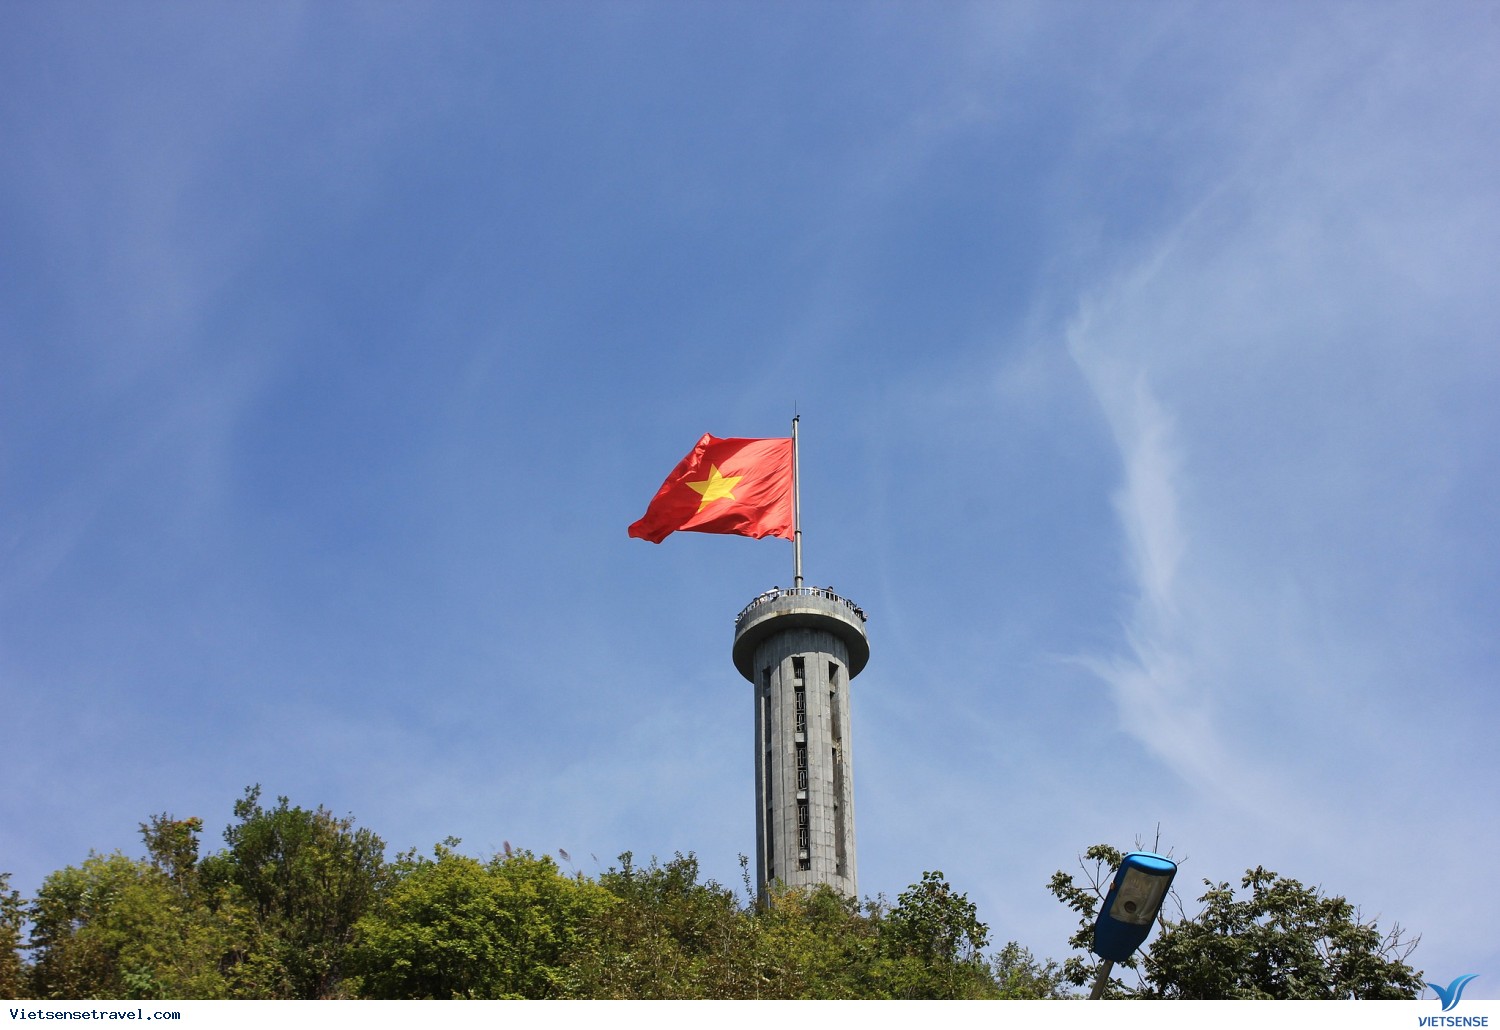 Lũng Cú cờ Việt Nam: Lũng Cú, nơi chiếc cờ Việt Nam đã được kéo lên cao trên đỉnh núi, nay đã trở thành một điểm đến hấp dẫn cho những ai muốn khám phá vẻ đẹp thiên nhiên hoang sơ của Việt Nam. Hãy chiêm ngưỡng tuyệt đỉnh đầy sức hút này qua hình ảnh đẹp tuyệt vời.